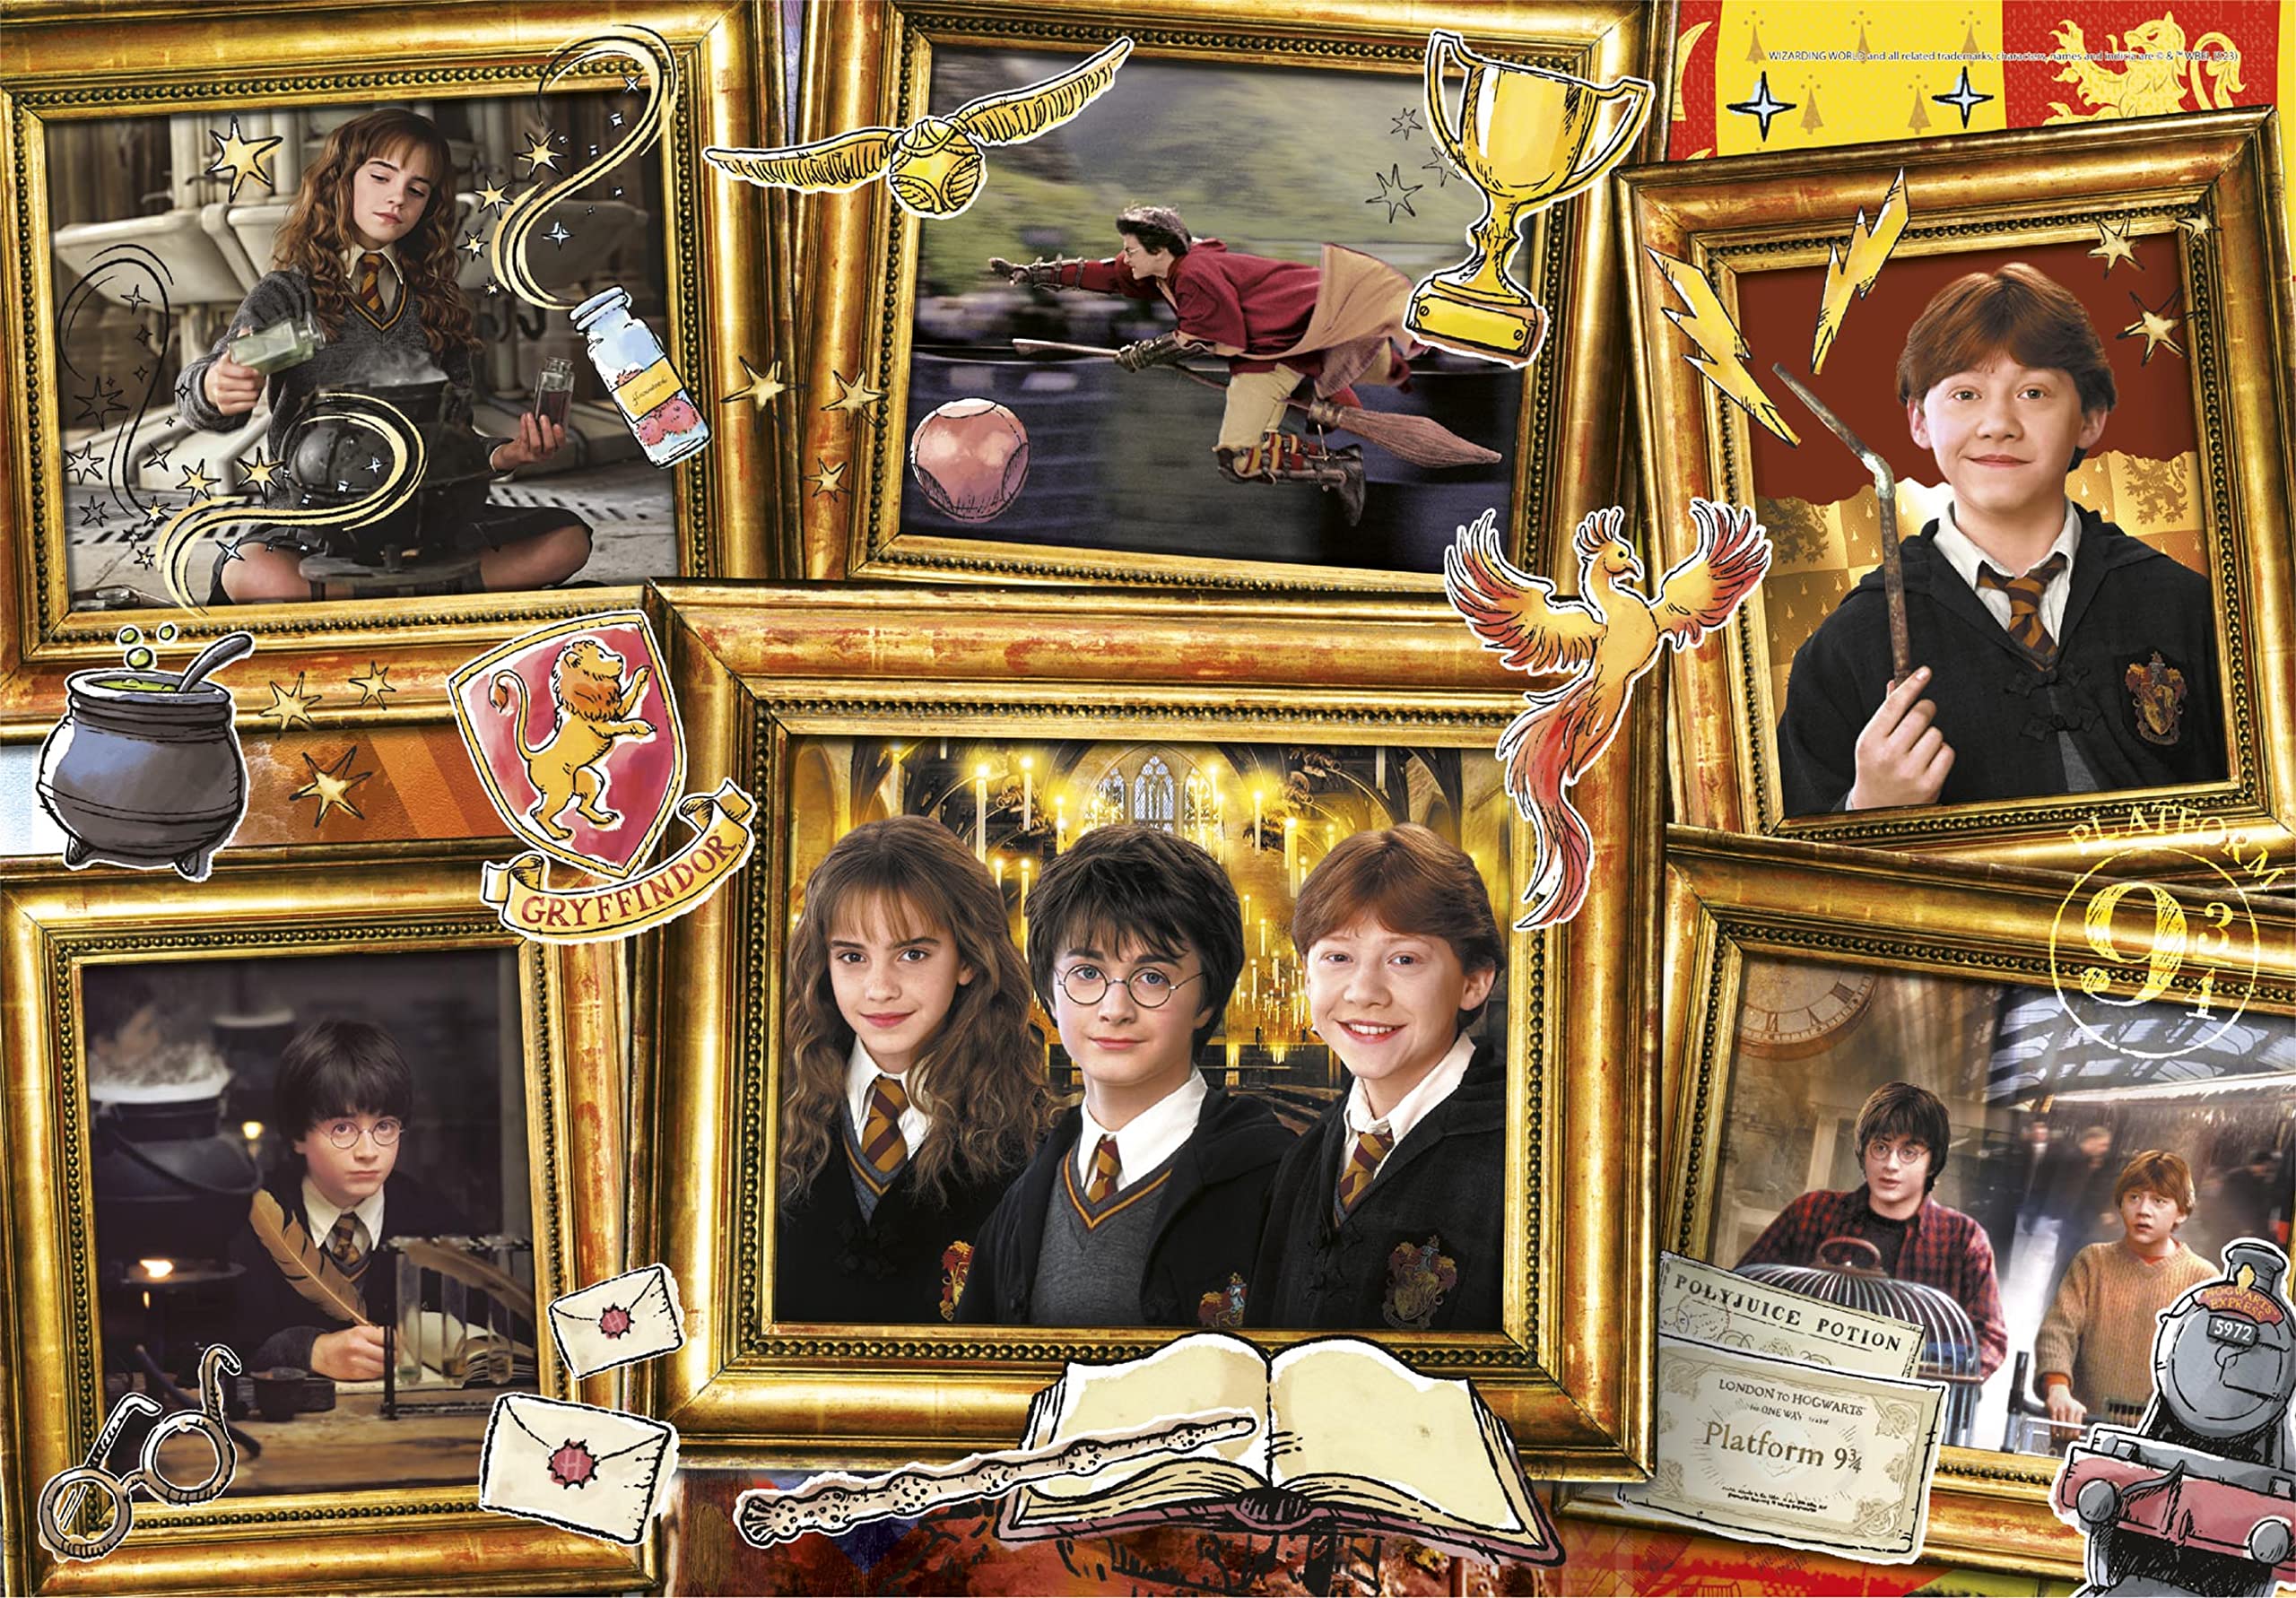 Clementoni 29781 Harry Potter Puzzle